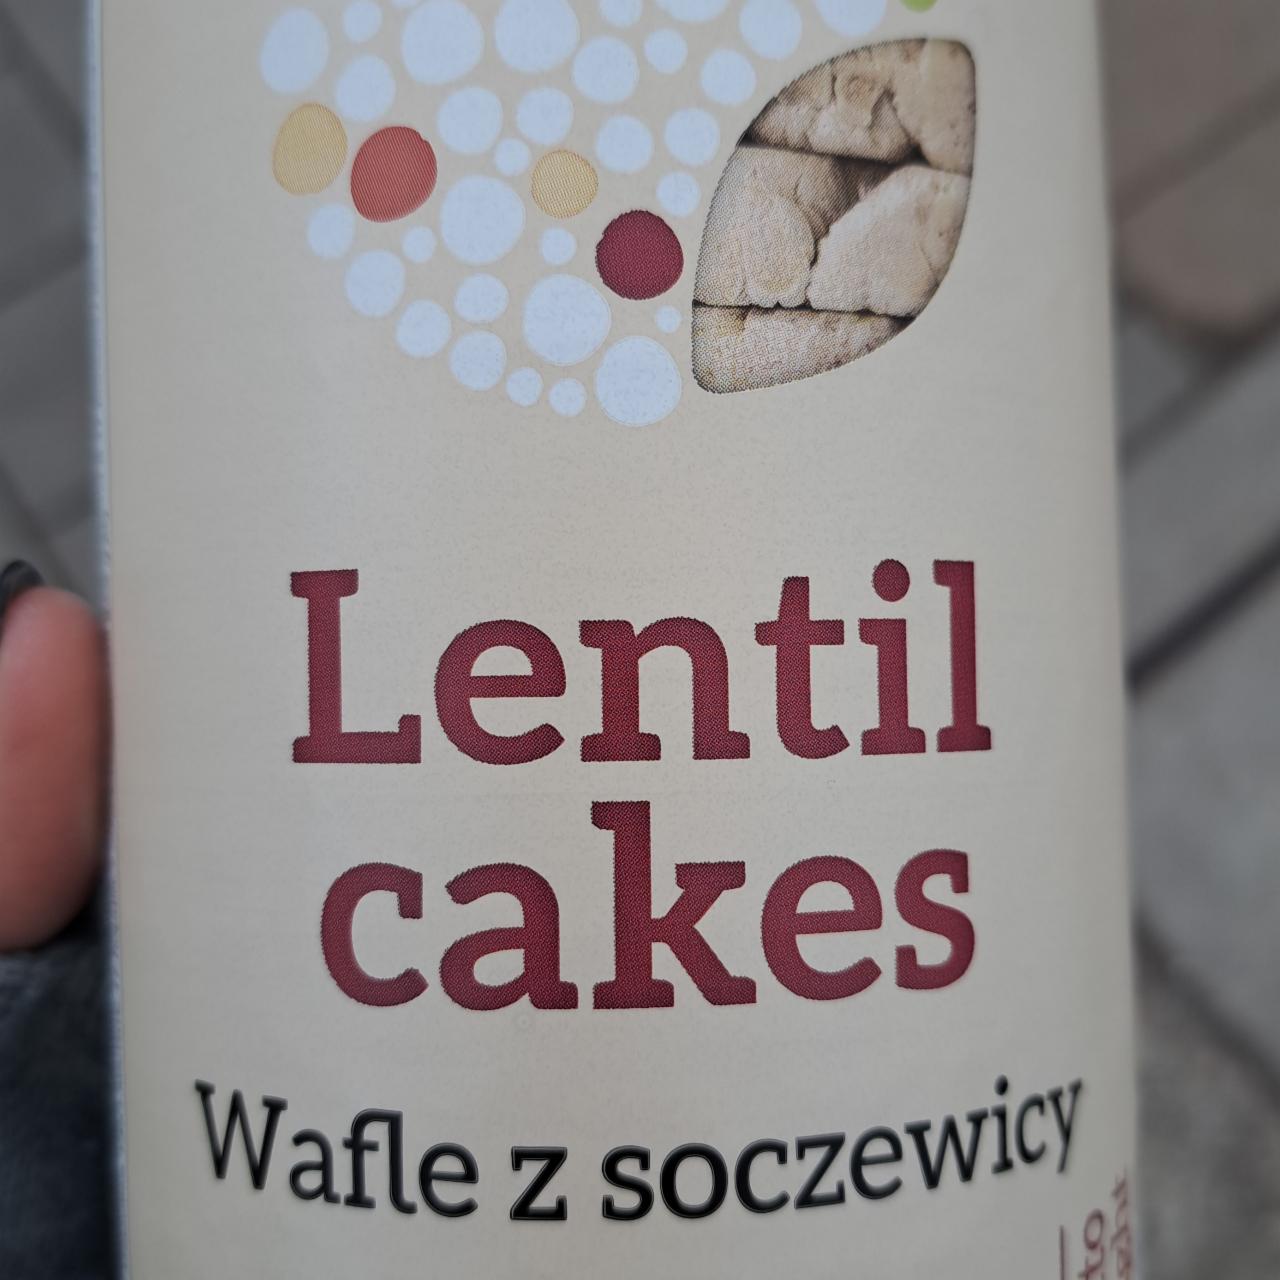 Zdjęcia - Lentil cakes Wafle z soczewicy Lestello